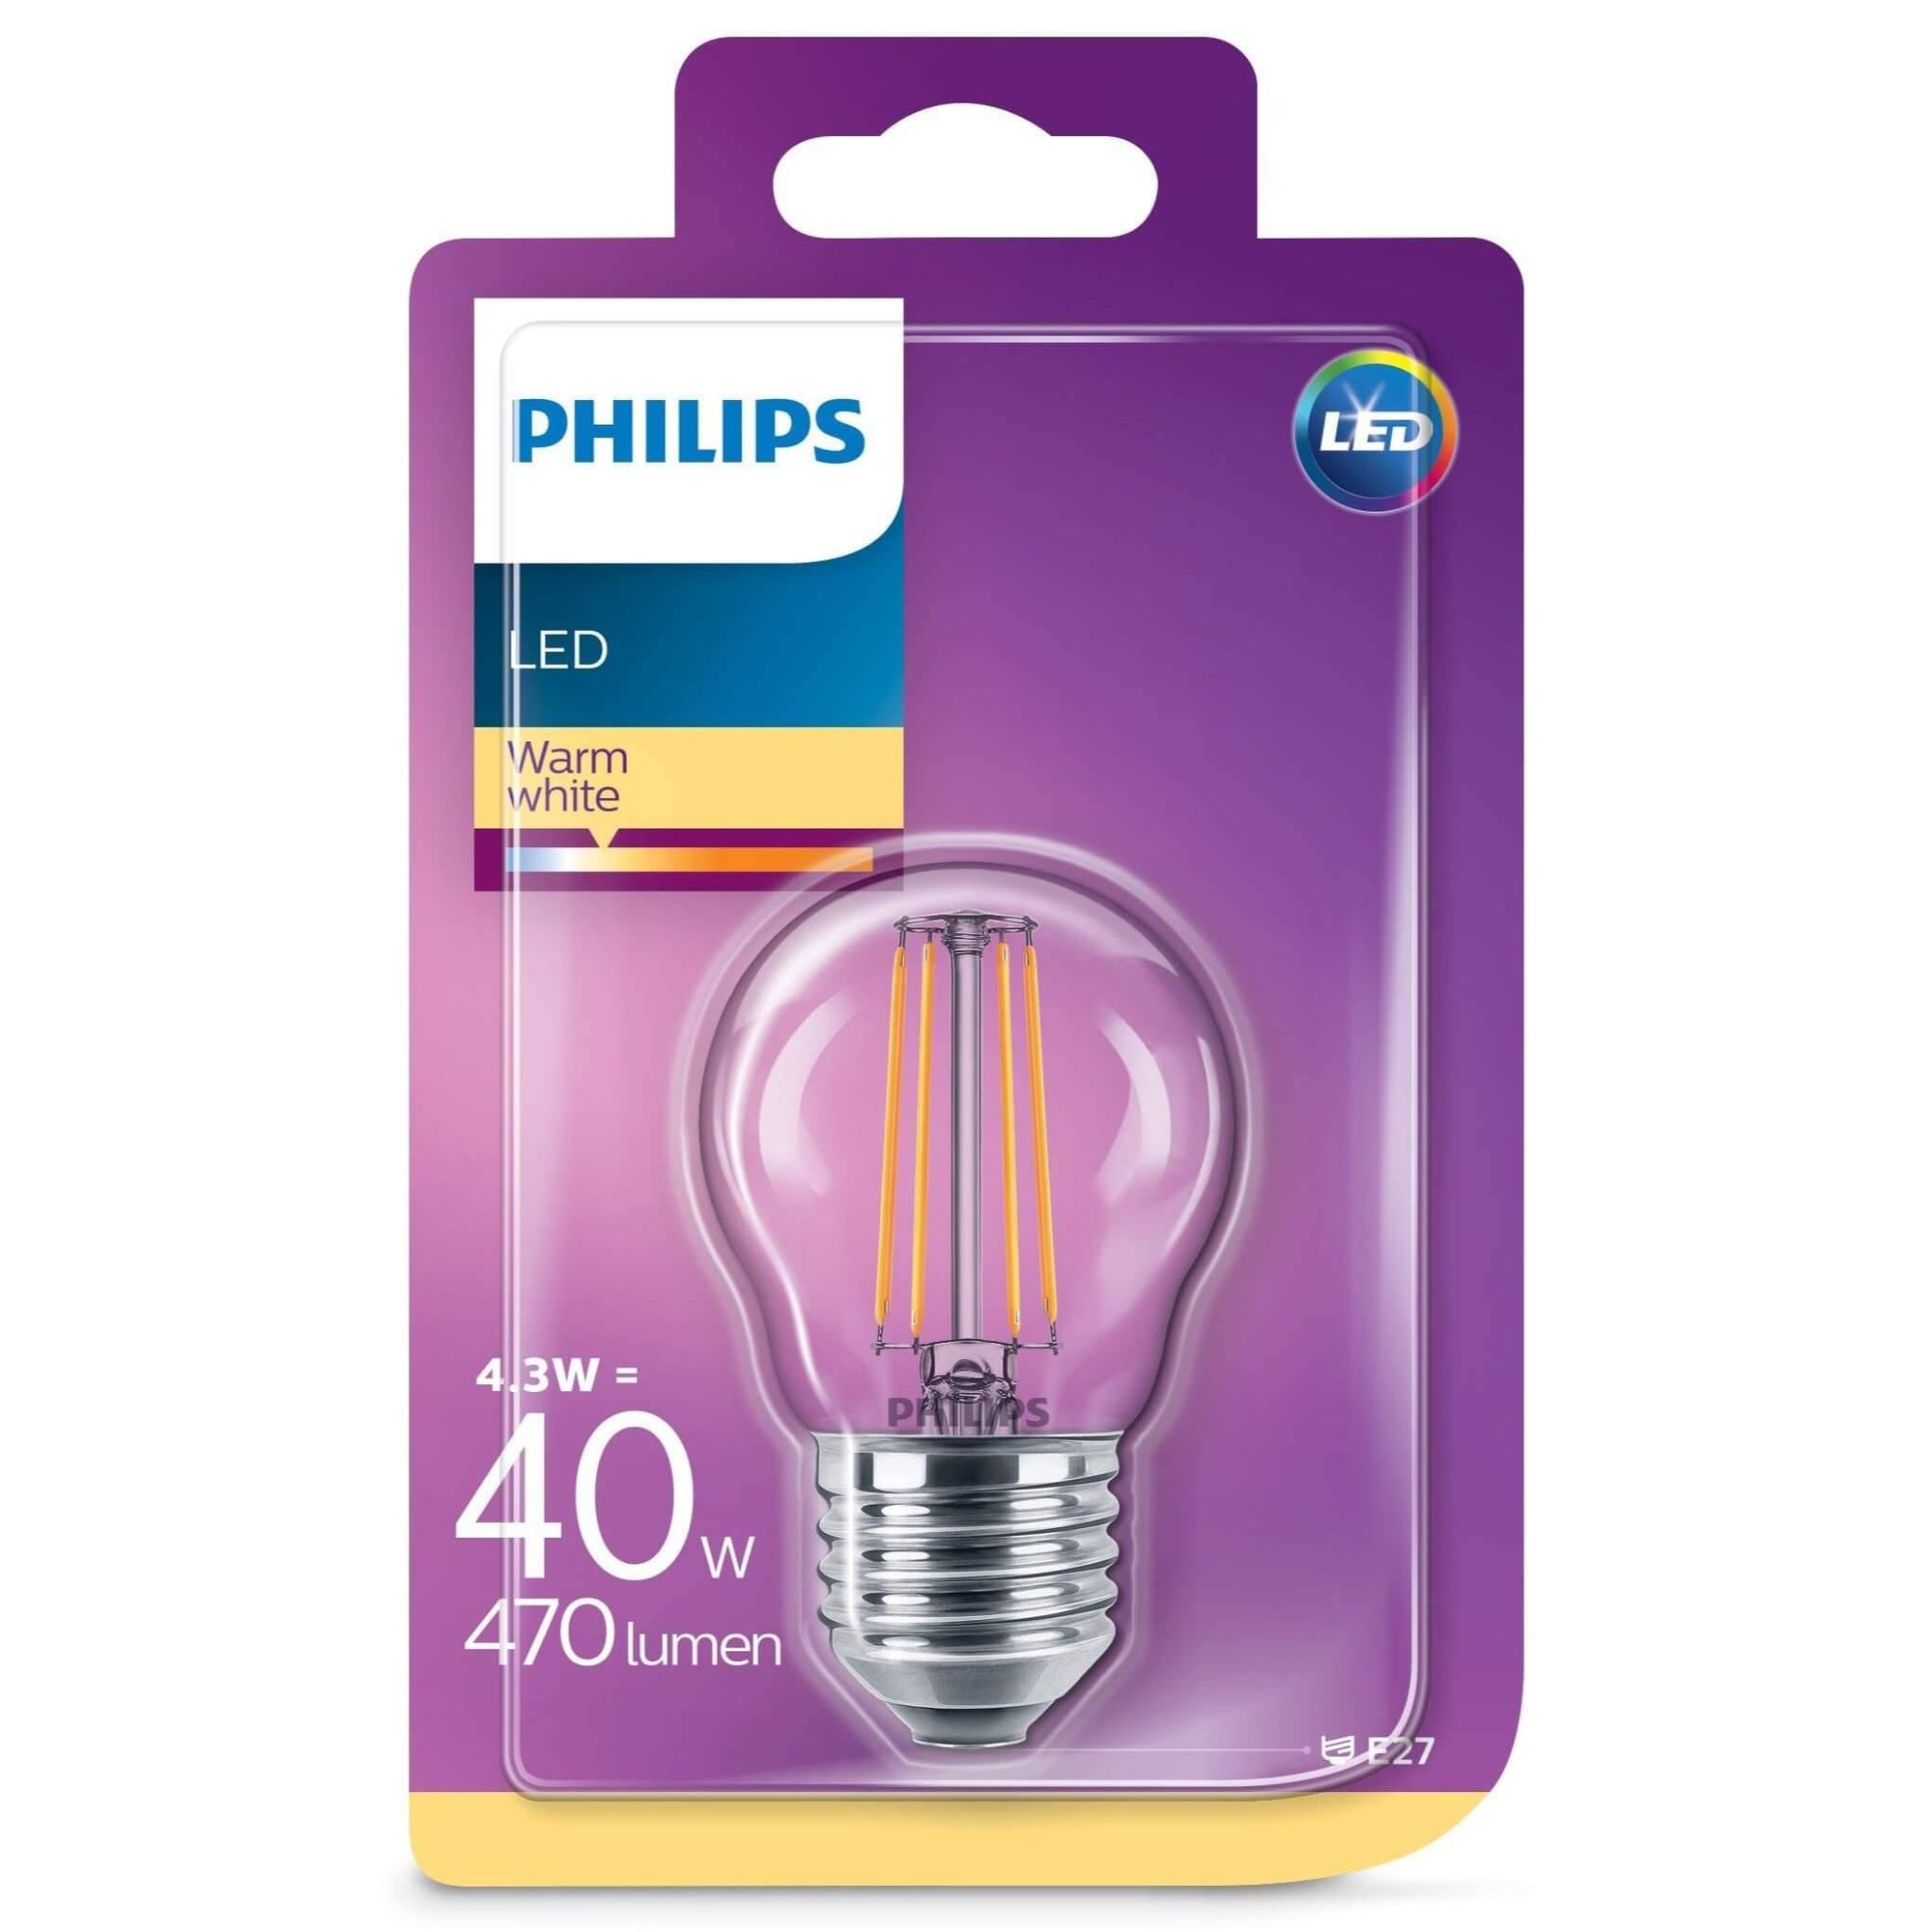 Domicilio Bec LED Philips P45 E27 4.3W 470 lumeni, cu filament pentru lustre, corpuri de iluminat, veioze sau lampadare